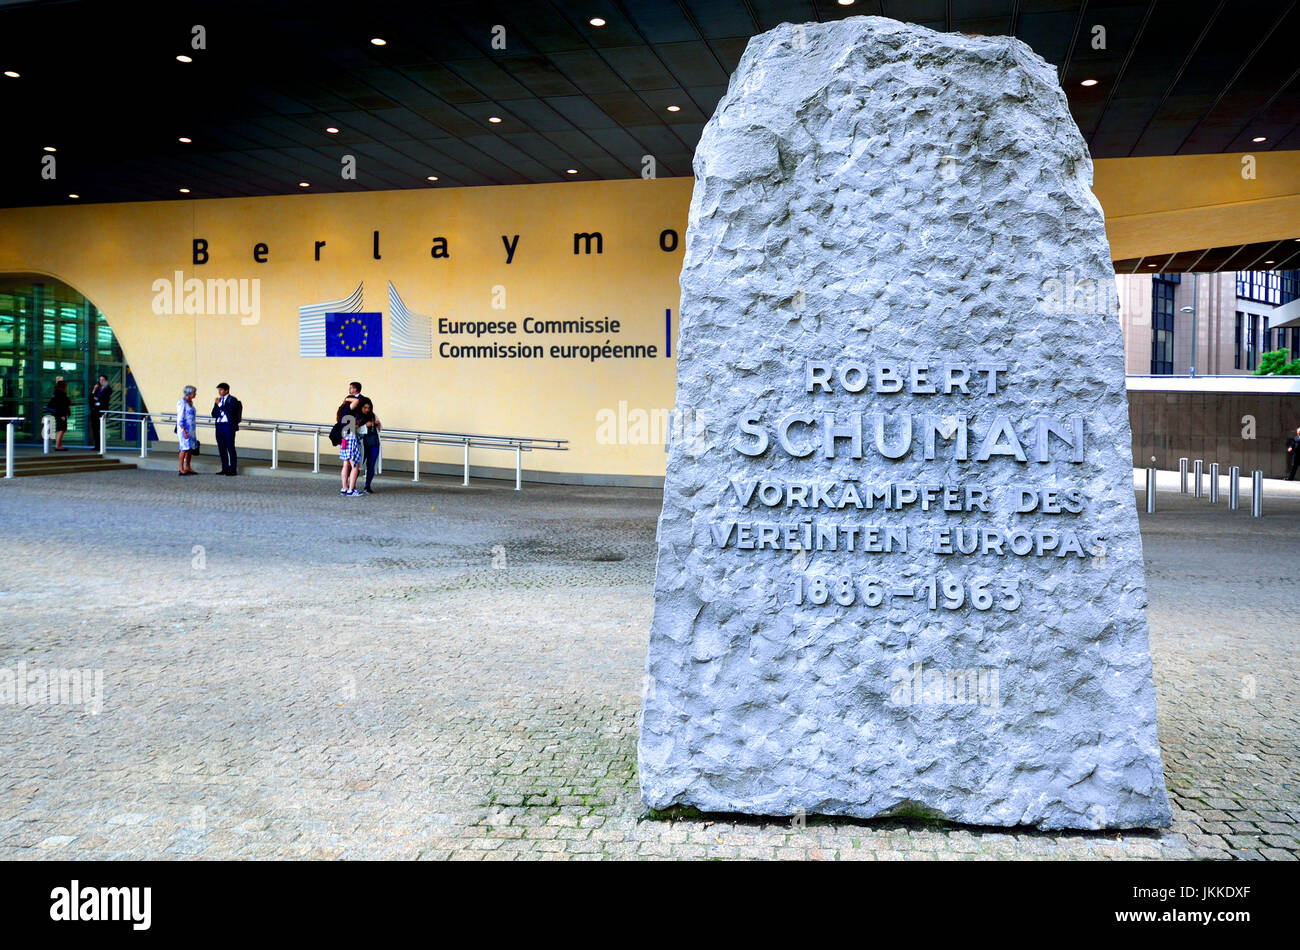 Bruxelles, Belgique. Commission européenne bâtiment Berlaymont. Monument à Robert Schuman Robert Schuman' 'Unified Promoteur de l'Europe 1886-1963" ... Banque D'Images